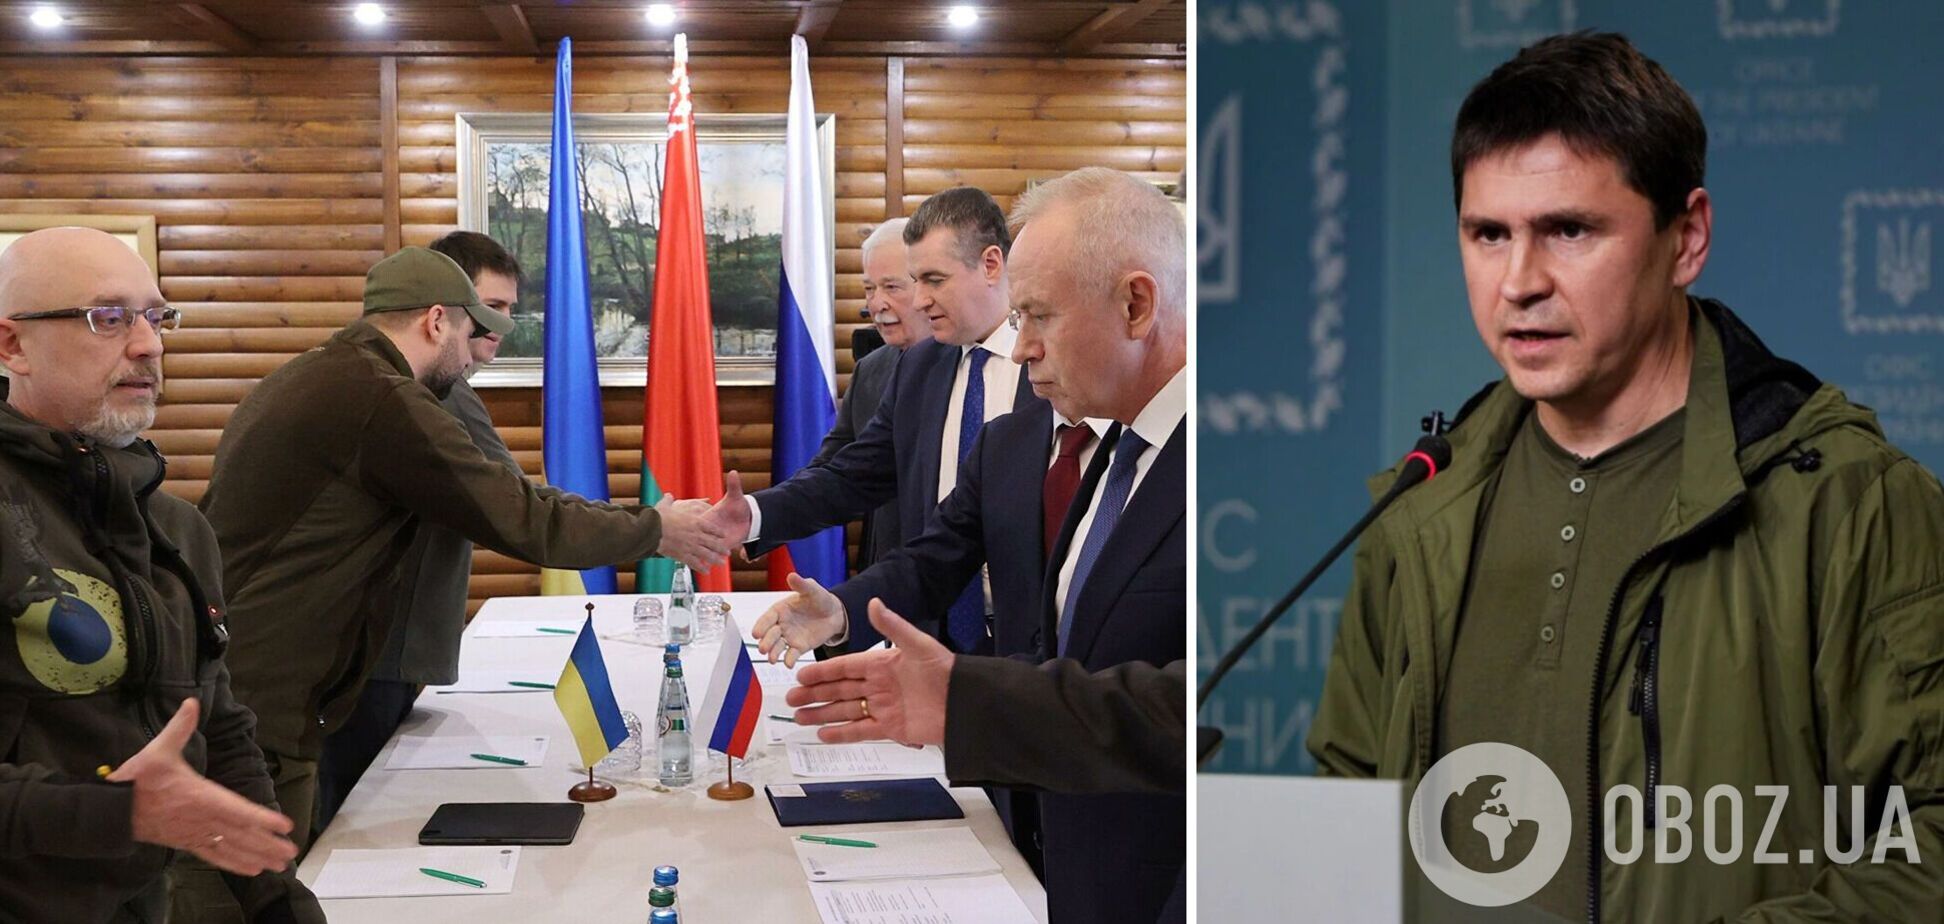 Есть три ключевых вопроса: Россия и Украина возобновили переговоры о прекращении войны. Первые подробности